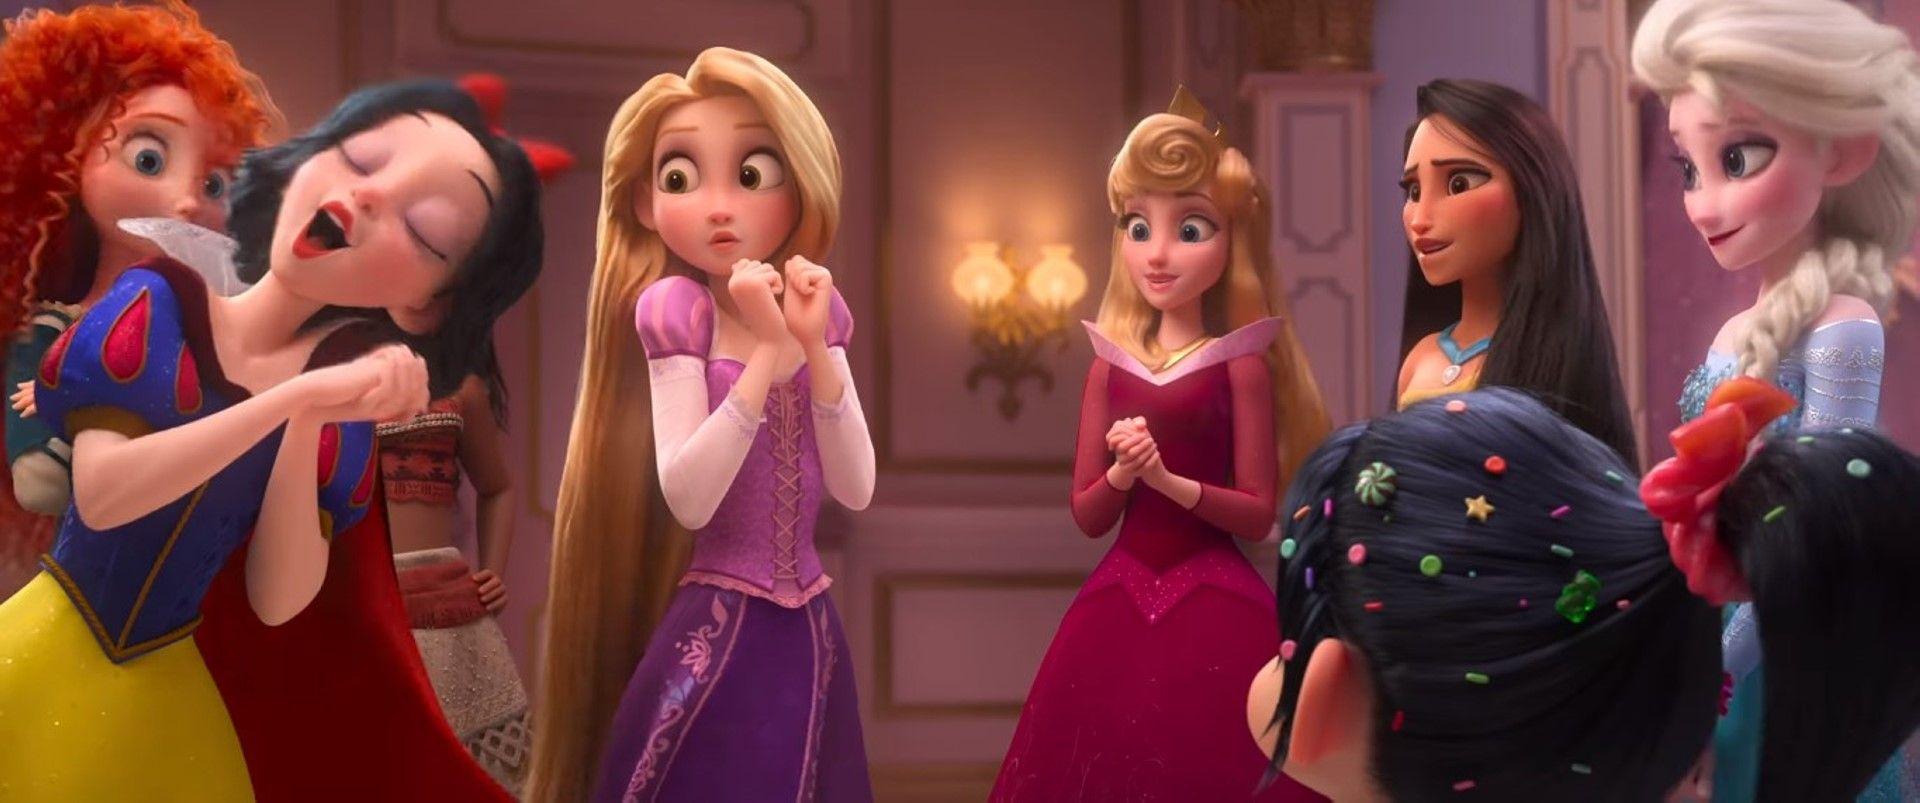 Principesse Disney immagini The Disney Princesses in Ralph Breaks